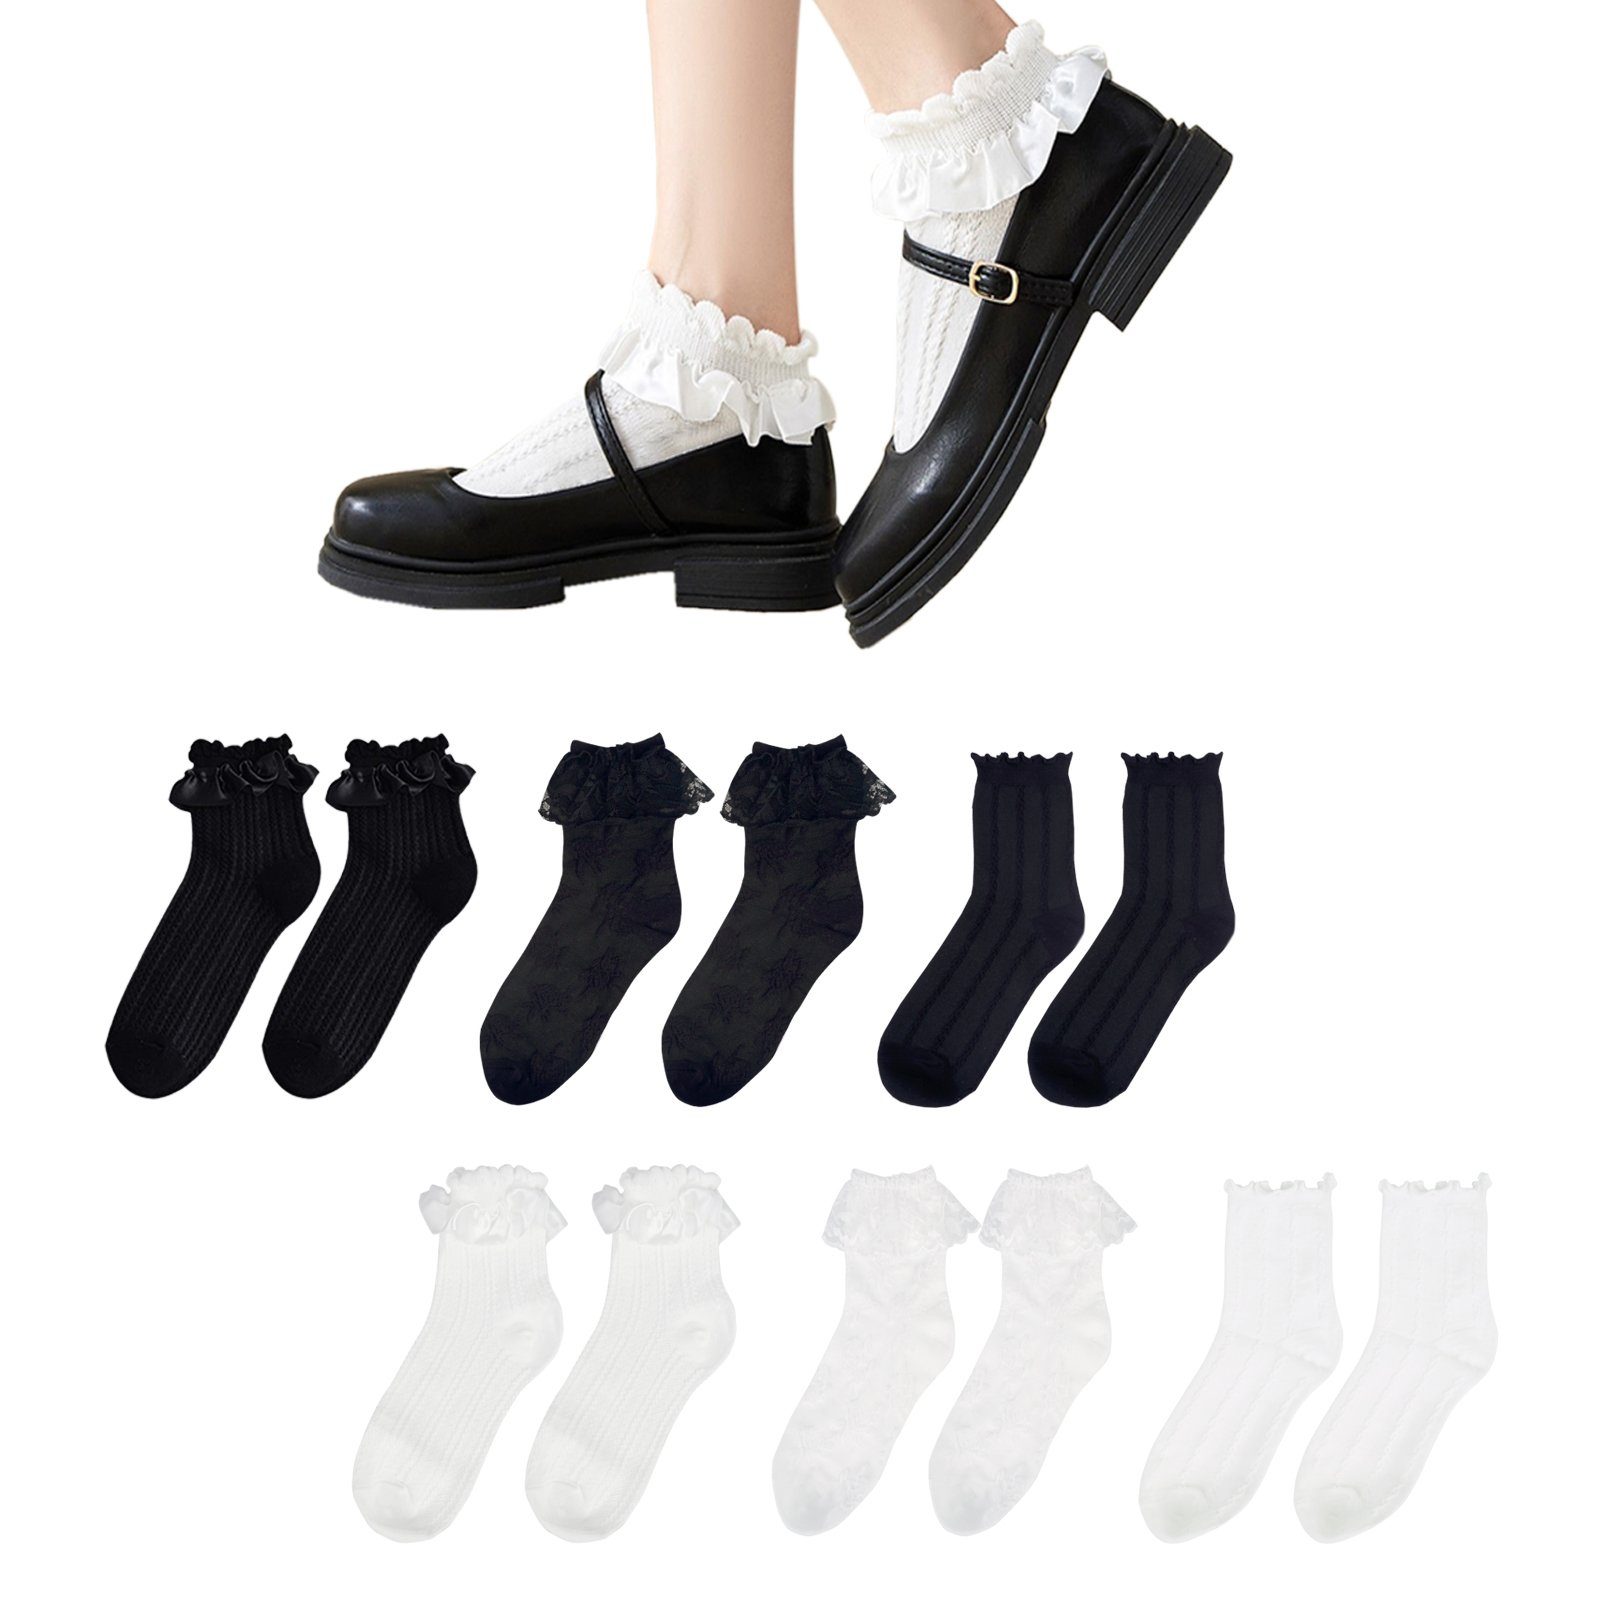 Rüschen, Socken, (6-Paar) Style Strümpfe Paar, Cosplaysocken Lolita Cosplay mit GalaxyCat Lolita 6 Söckchen Rüsche Japanische im